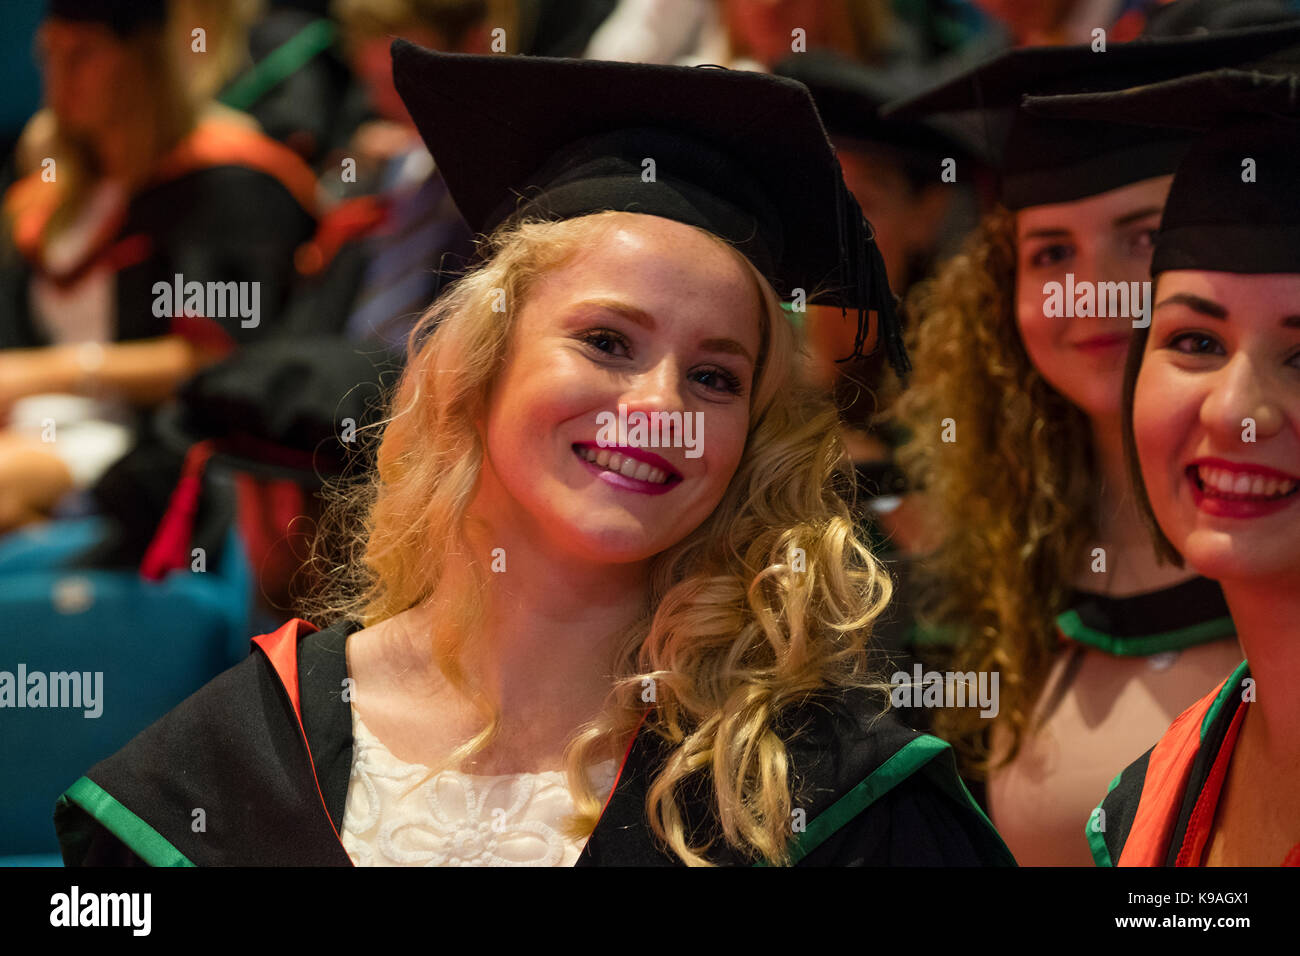 L'enseignement supérieur au Royaume-Uni : les étudiants de l'université d'Aberystwyth portant des robes universitaires traditionnelles et le mortier d'affichage sur le jour de la remise des diplômes, juillet 2017 Banque D'Images